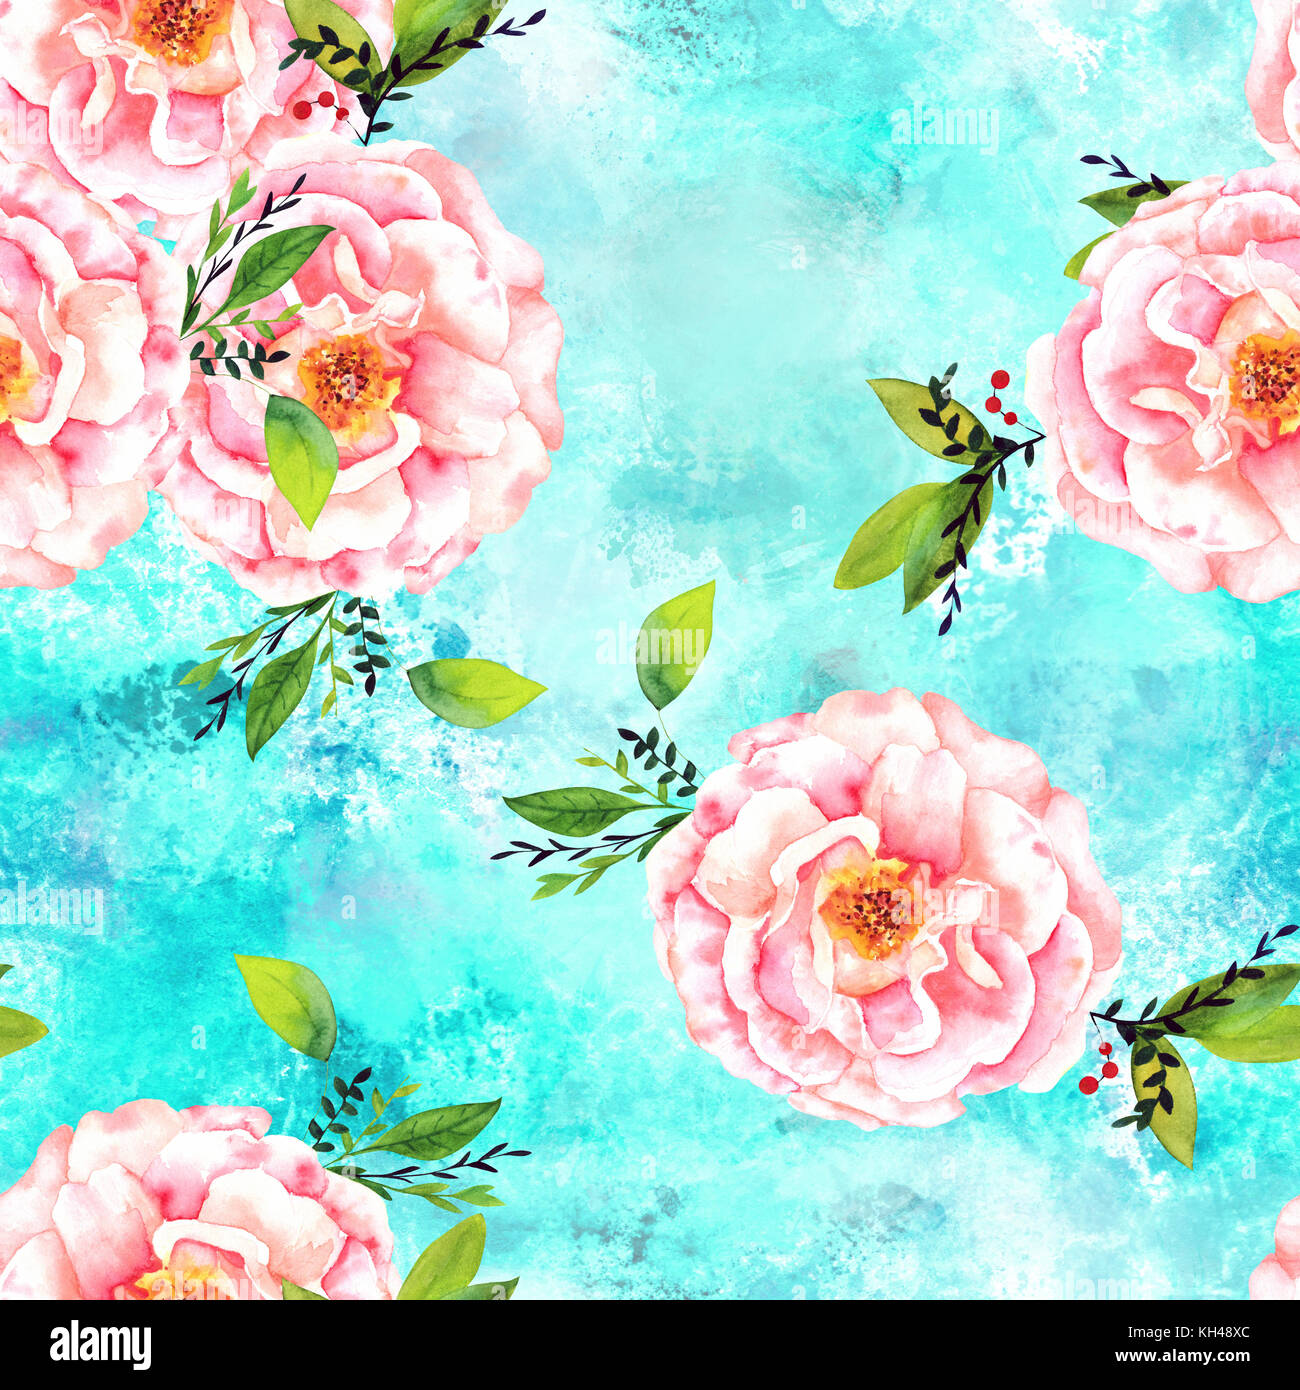 Eine nahtlose Muster mit einem Aquarell Zeichnung eines blühenden rosa Rose mit grünen Zweige und Blätter, die Hand auf eine blaugrüne Hintergrund gemalt Stockfoto